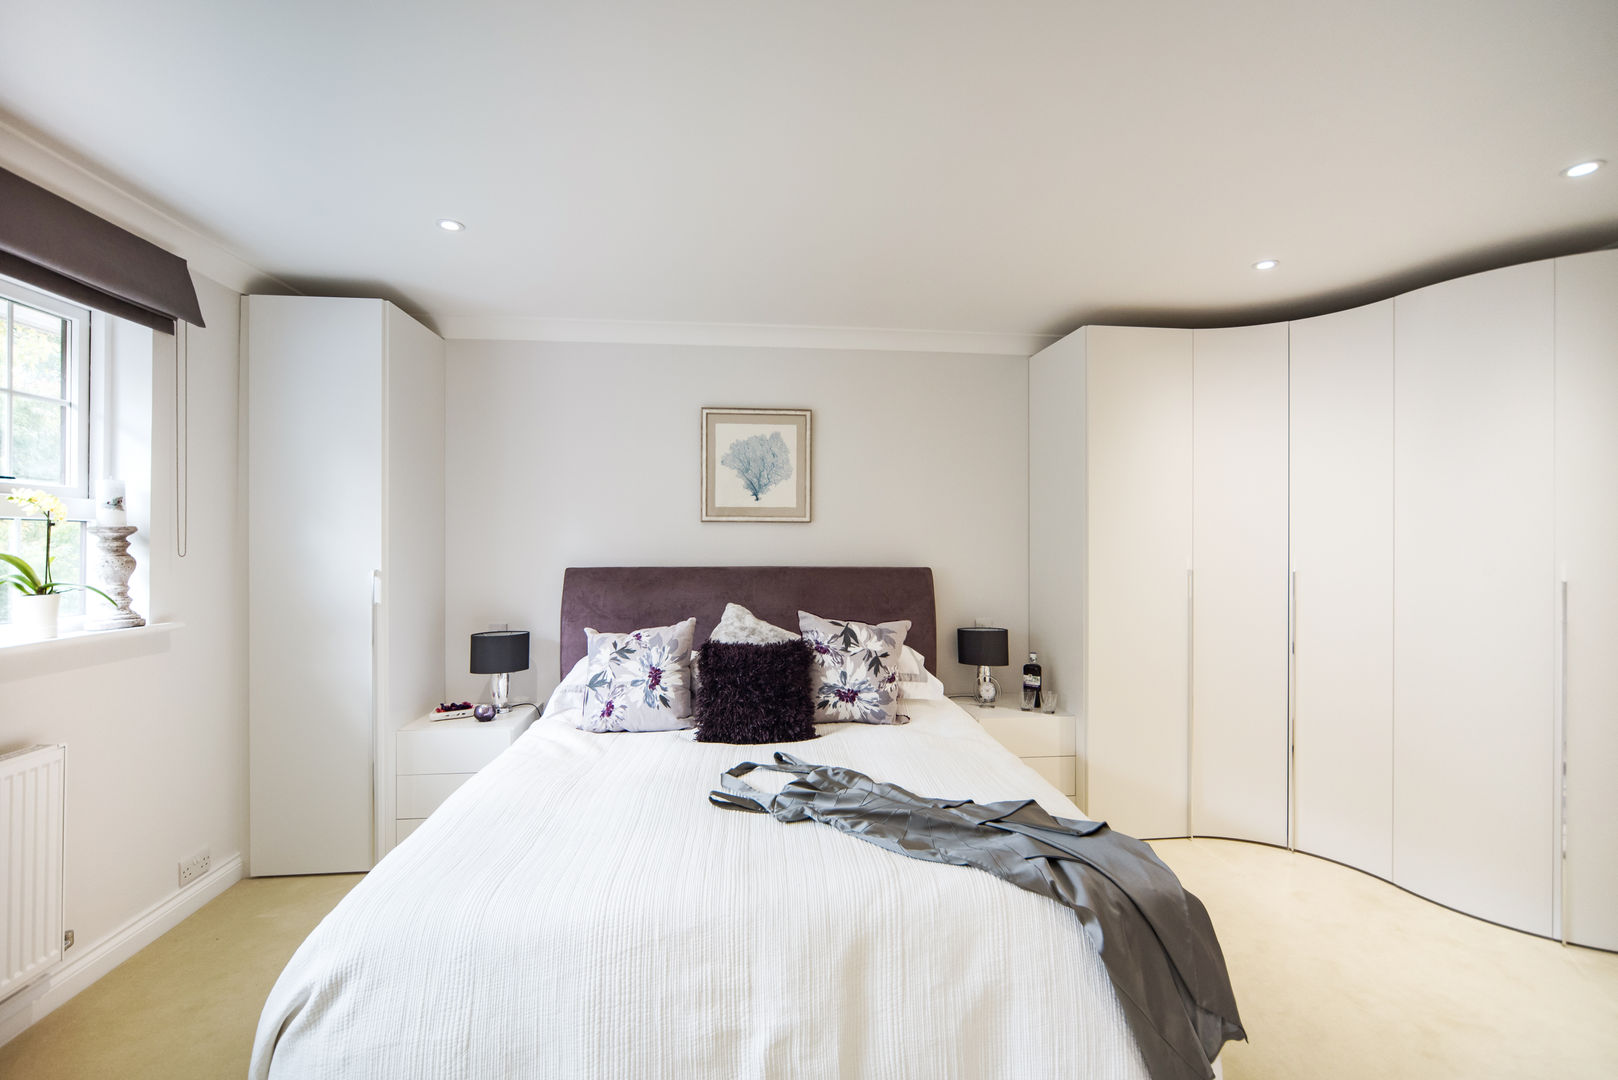 Mr & Mrs G, Bedroom, Woking Raycross Interiors Dormitorios modernos: Ideas, imágenes y decoración Madera Acabado en madera